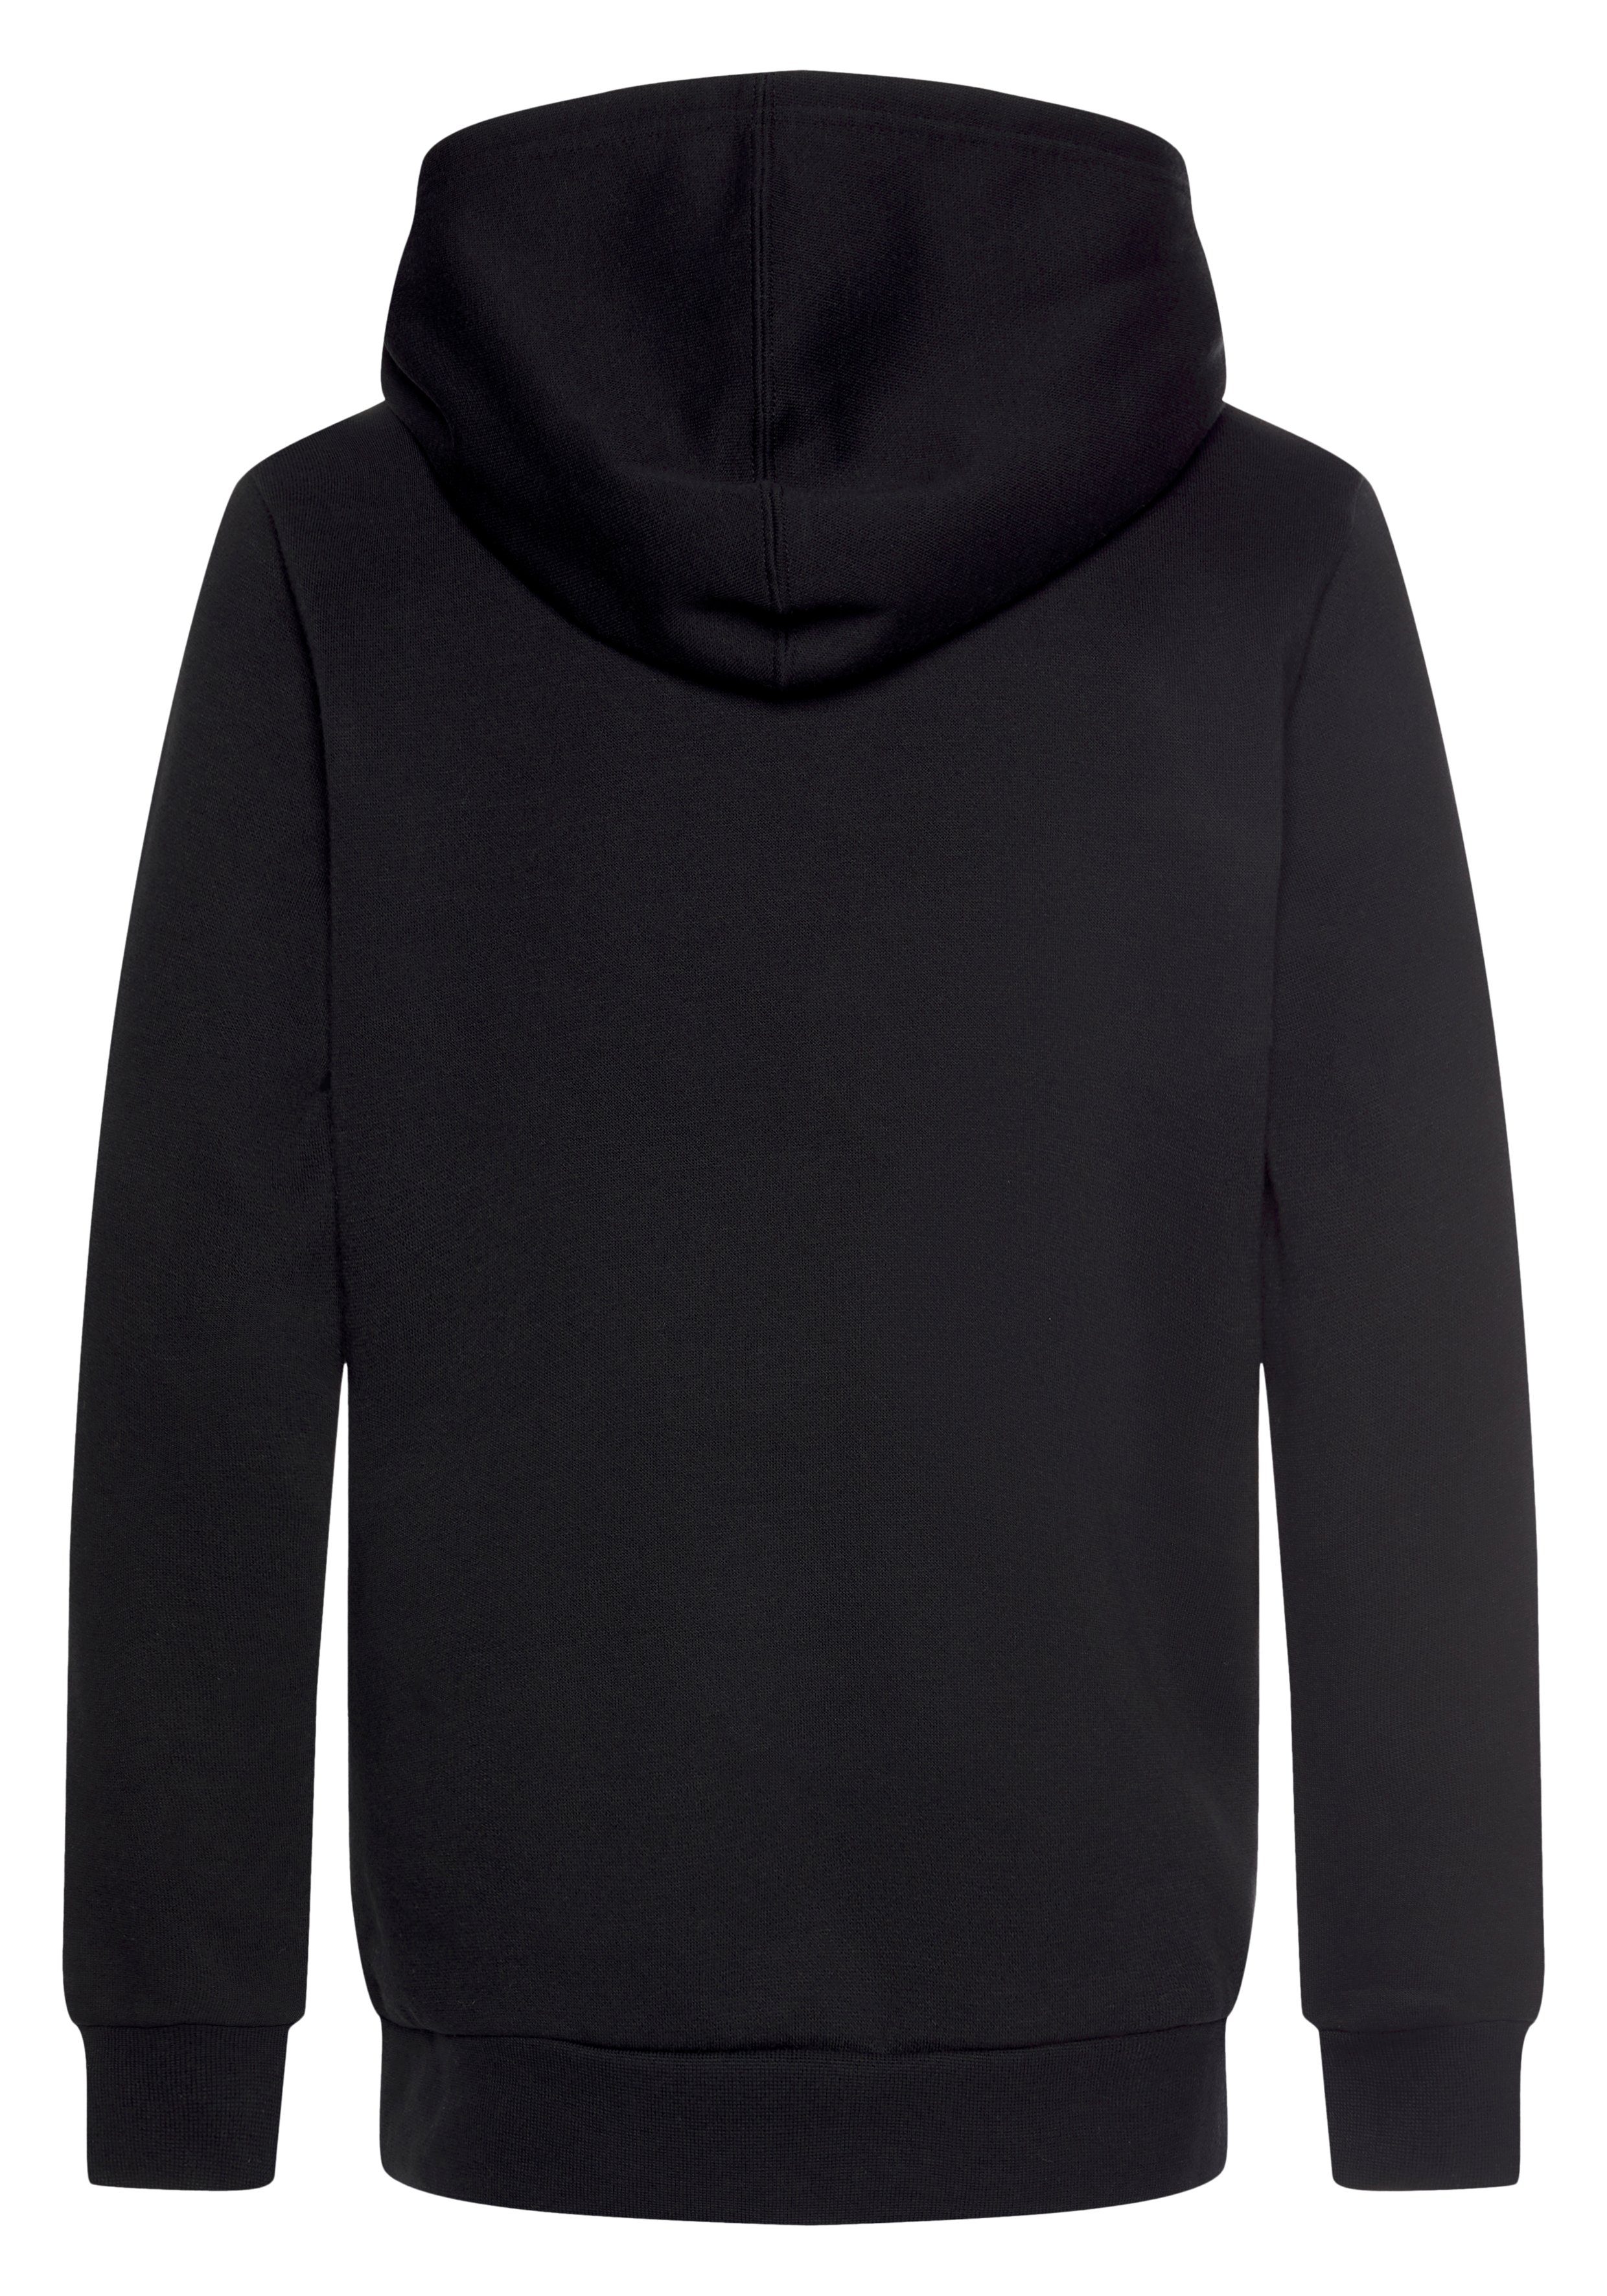 schwarz Kapuzensweatshirt Sweatshirt Hooded Champion